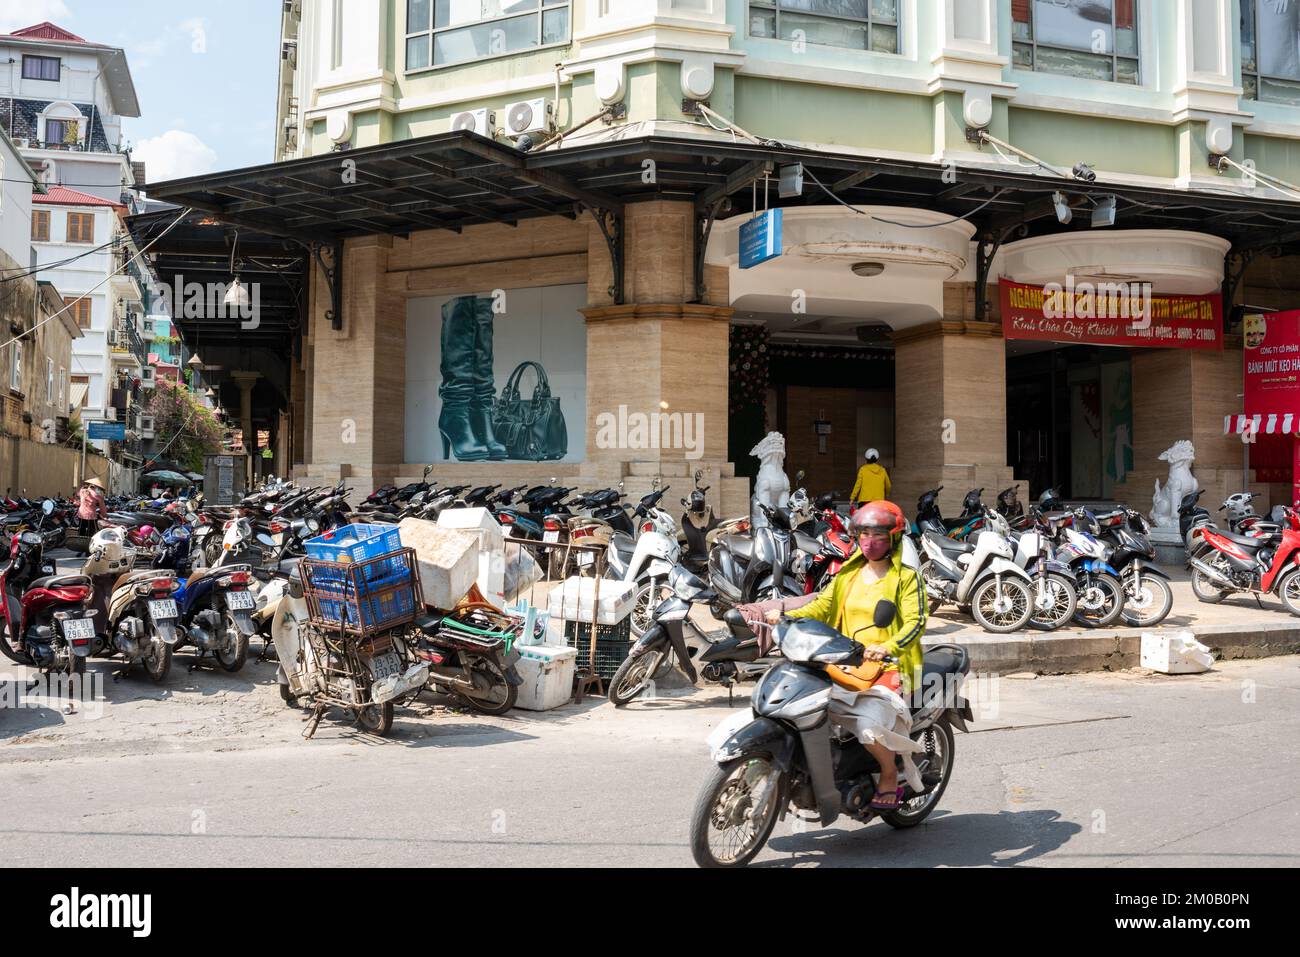 Hanoi, Vietnam - 16. September 2018: Motorräder, die auf Gehwegen geparkt sind, behindern den Zugang zu Fußgängern in einem Geschäftsviertel von Hanoi, Überbevölkerung verursacht Betrug Stockfoto